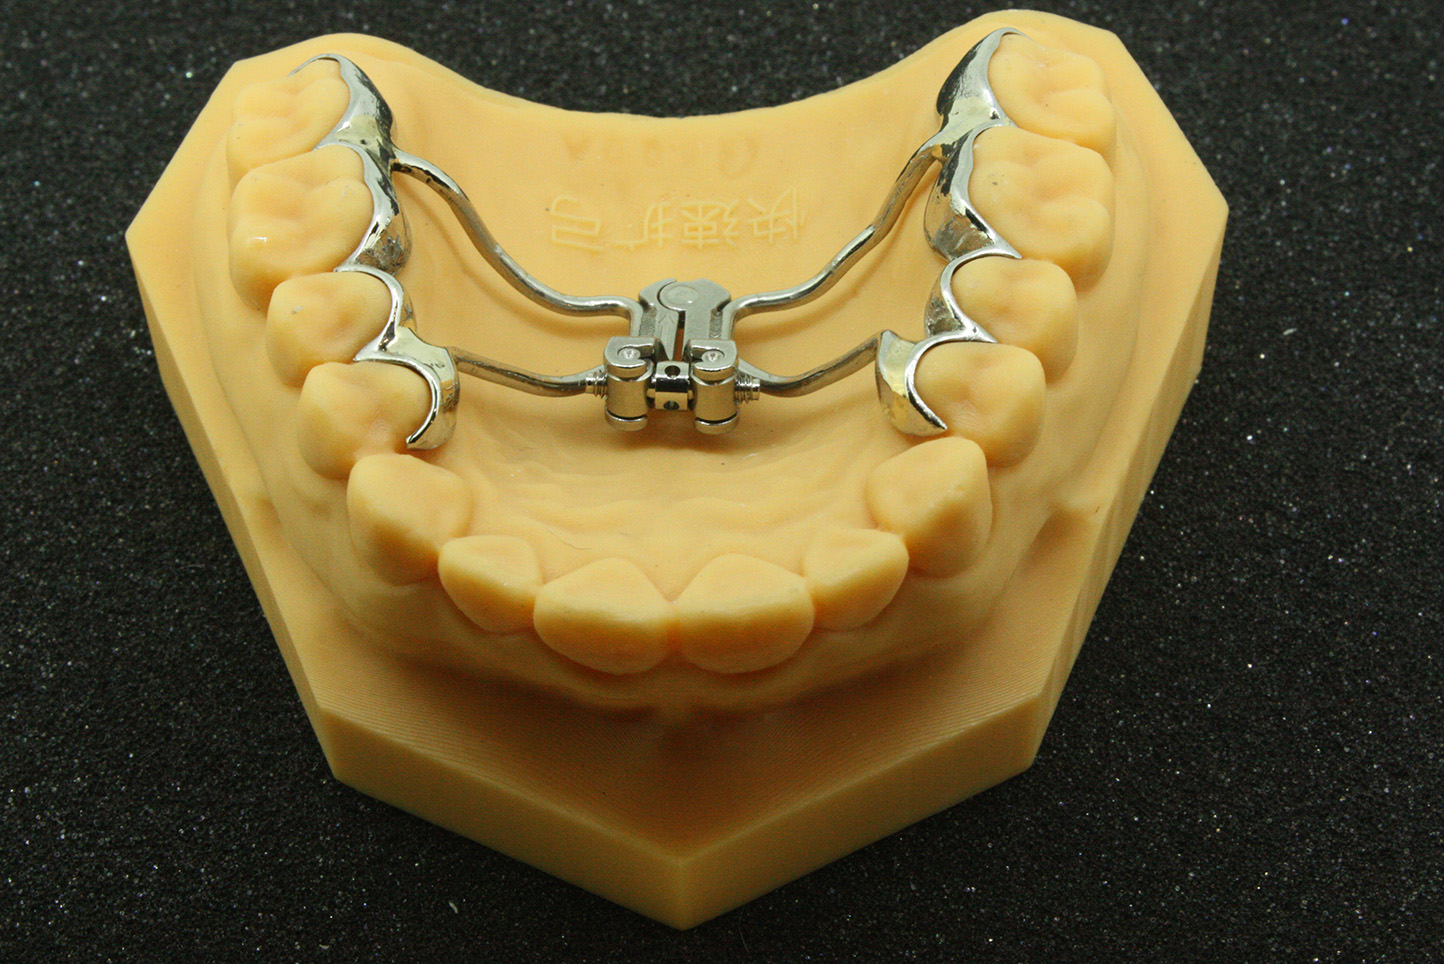 隐形牙齿矫正器和传统牙套 你选哪个 - 贝色口腔